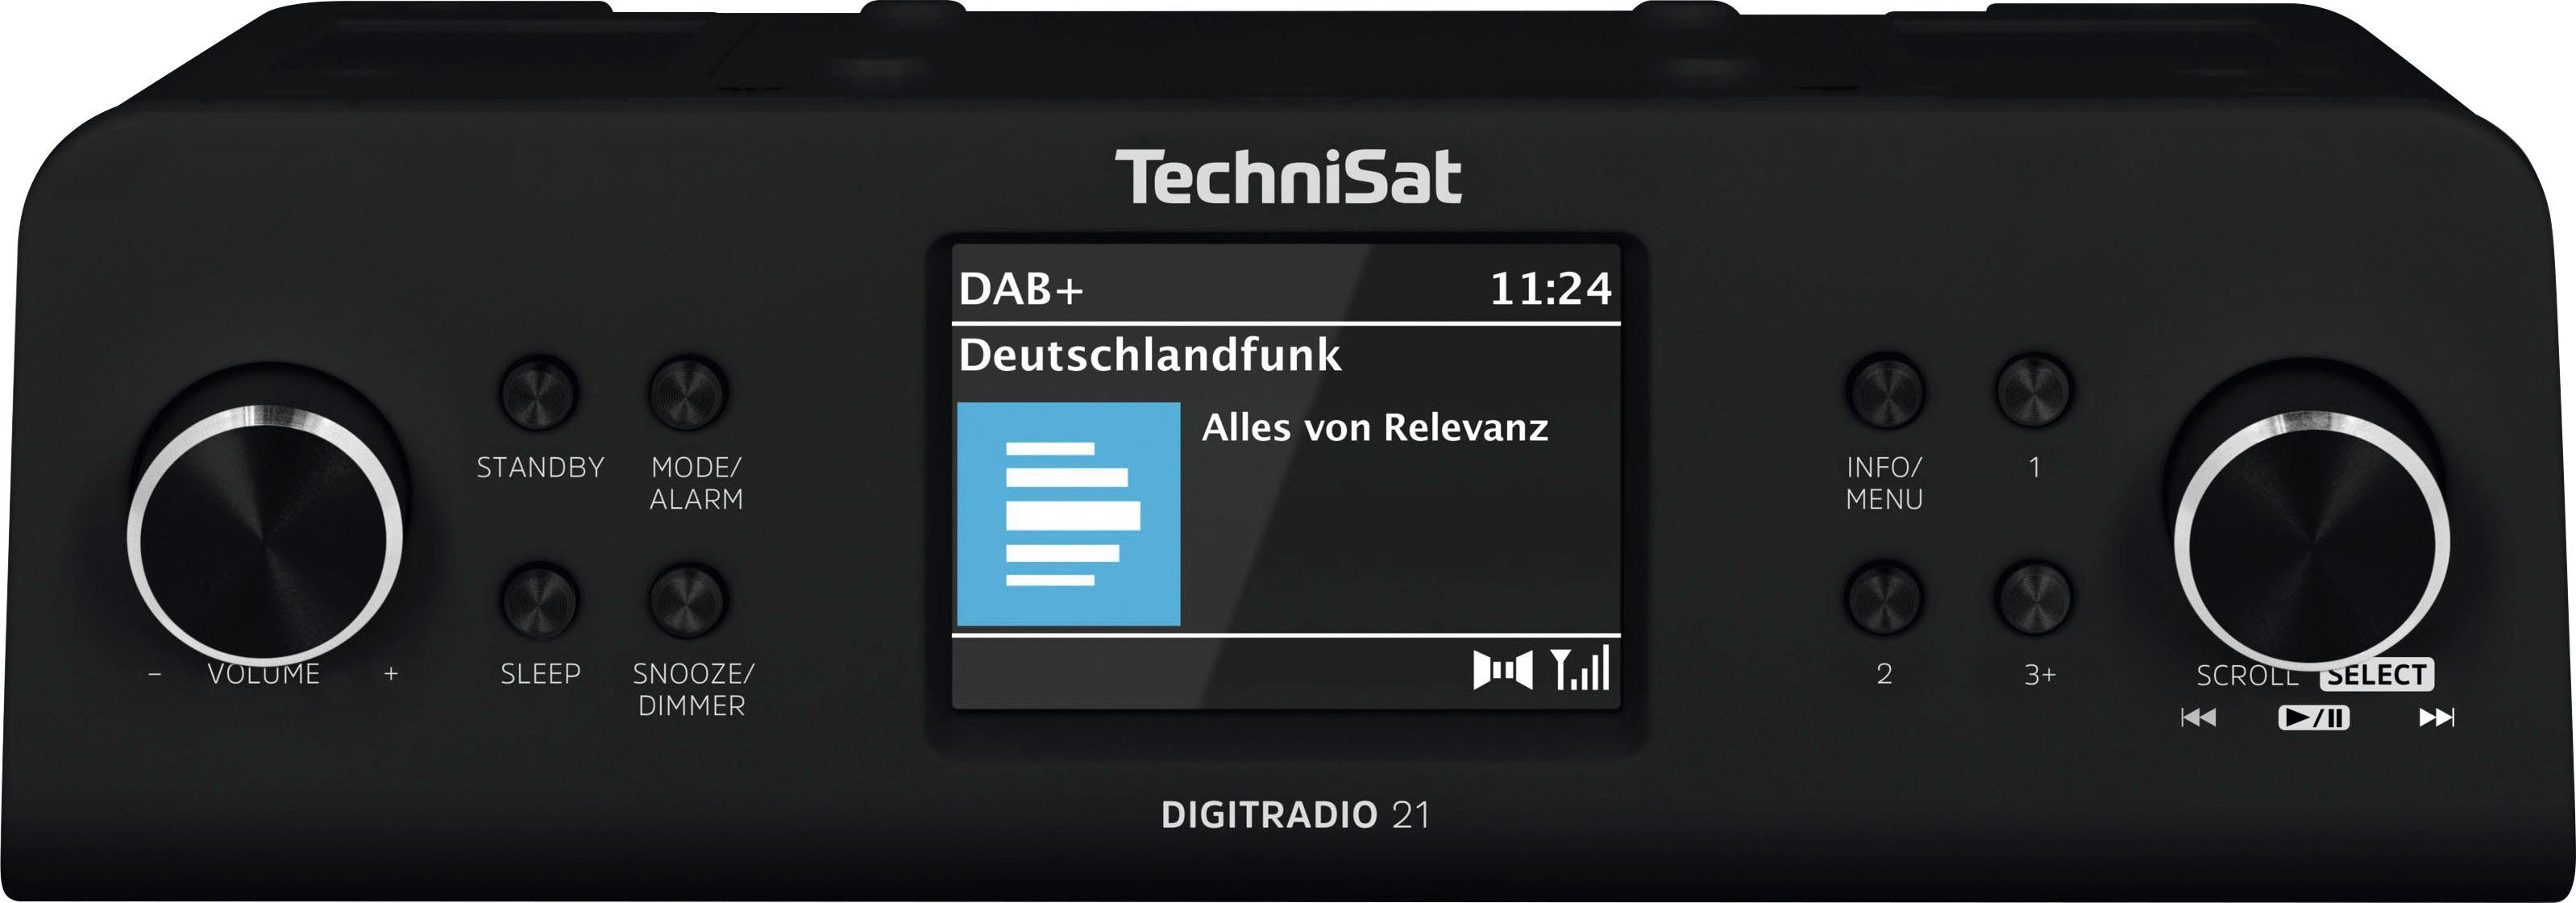 schwarz TechniSat mit RDS, Unterbau-Radio,Küchen-Radio) 2 21 (DAB), UKW (Digitalradio Küchen-Radio W, DIGITRADIO